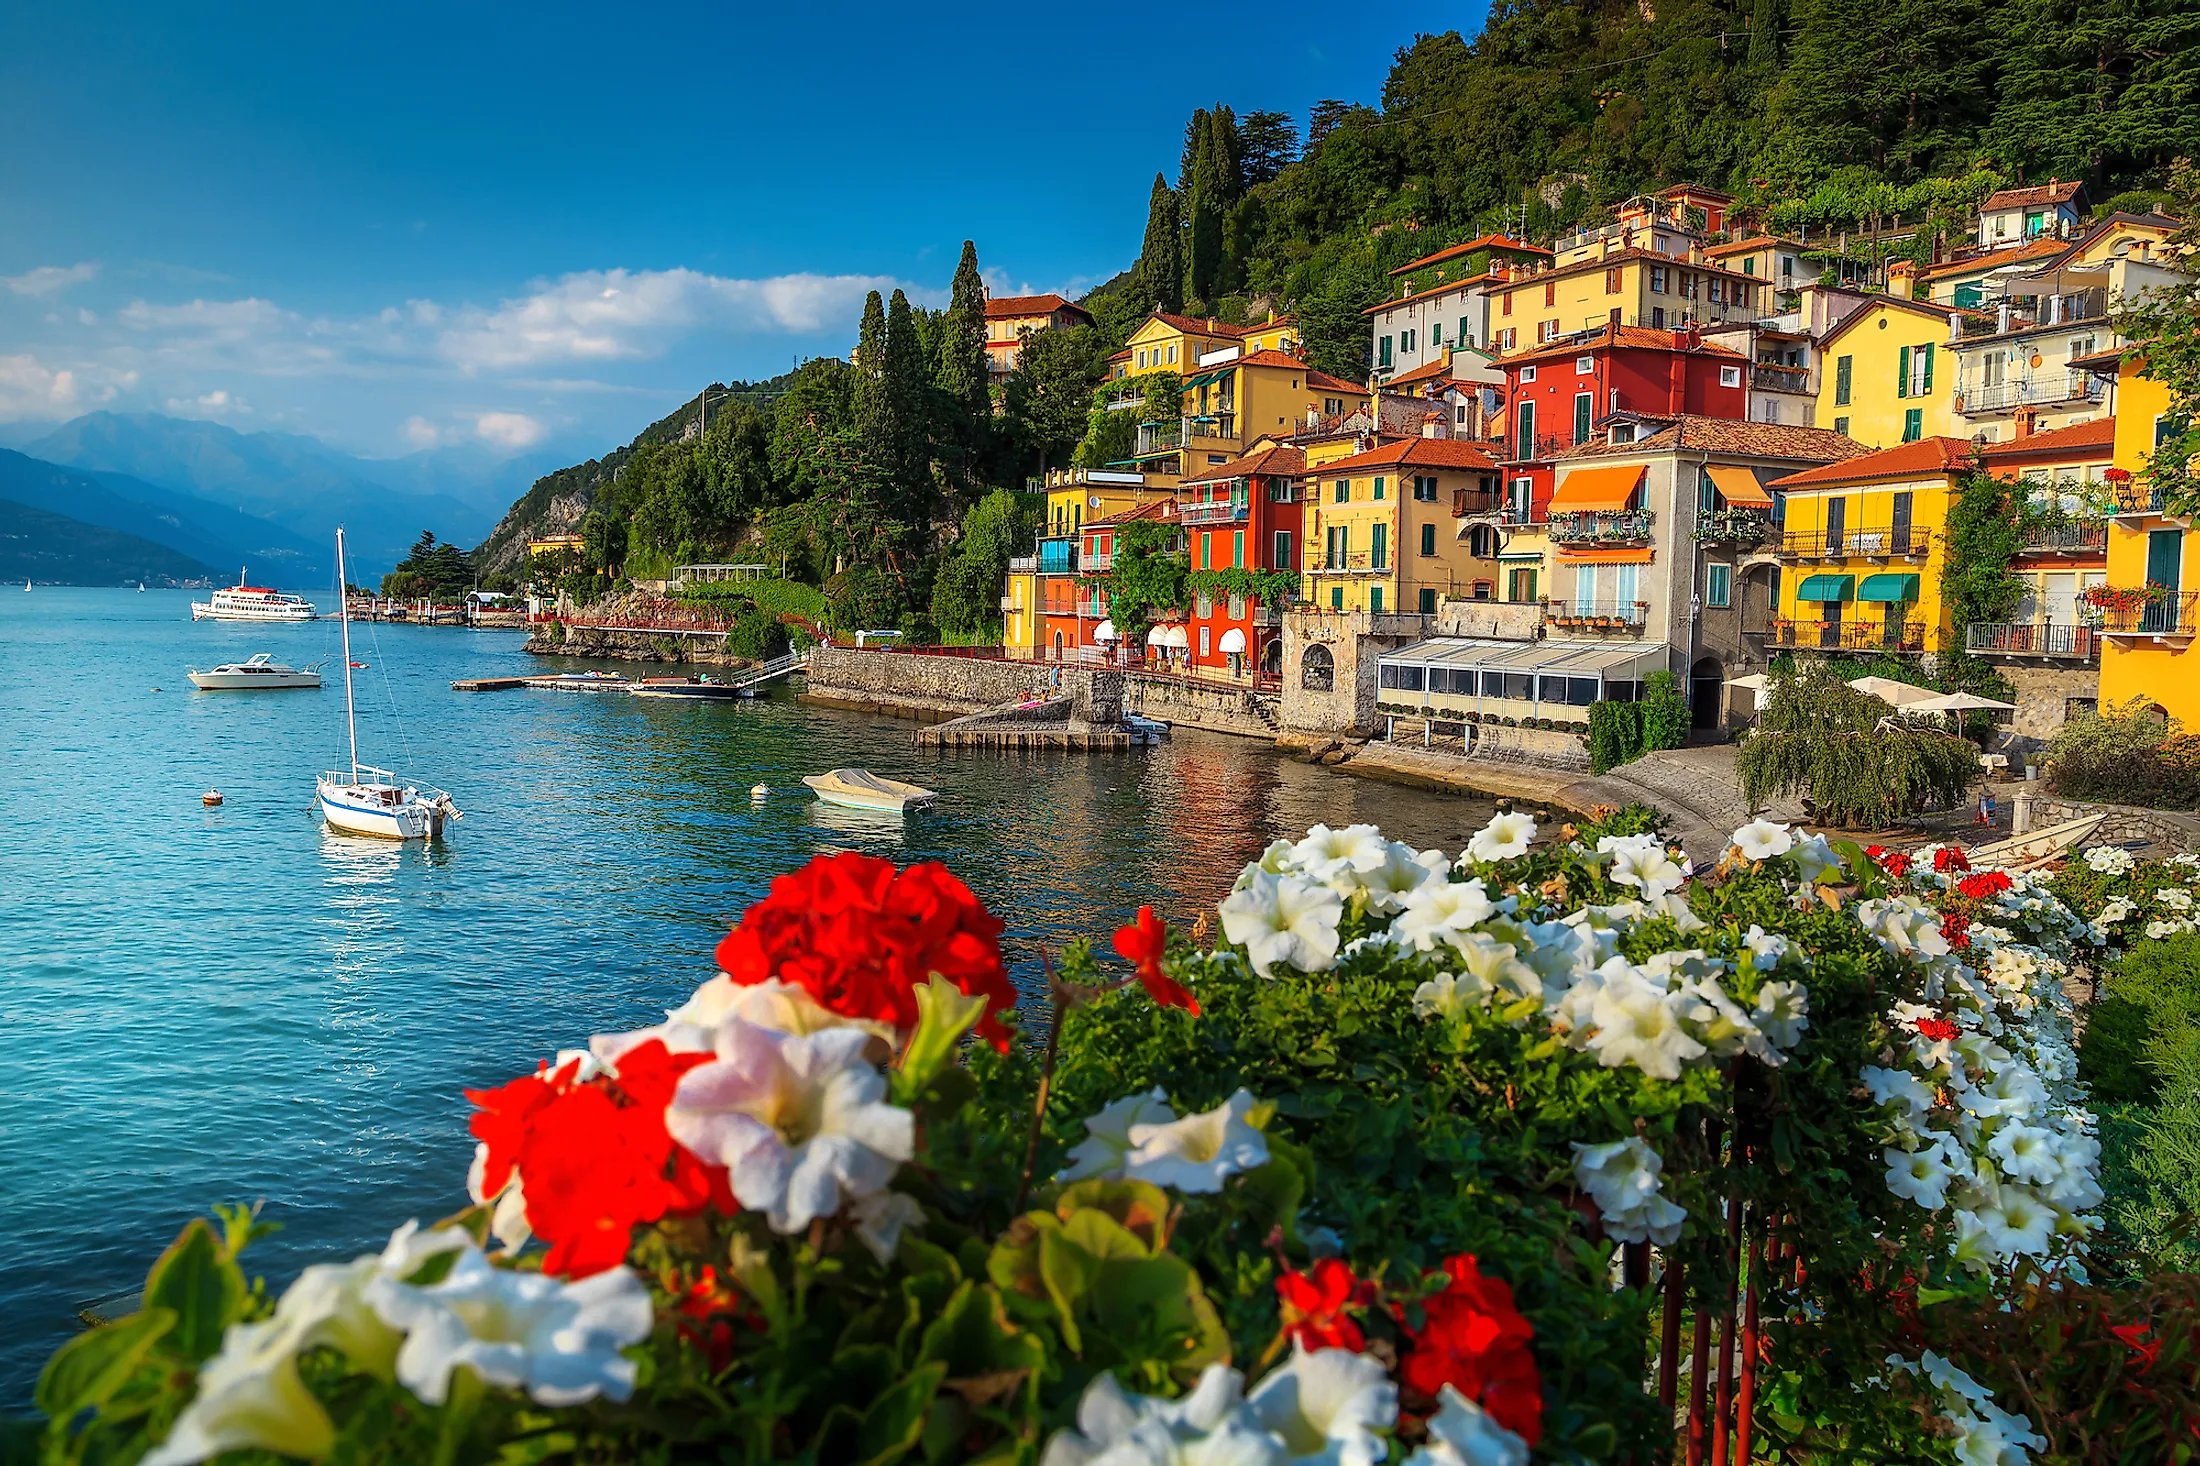 Λίμνη Κόμο: Η πιο δημοφιλής λίμνη της Ιταλίας που αγαπούν οι αστέρες του Χόλιγουντ Πηγή φωτογραφίας: https://www.worldatlas.com/